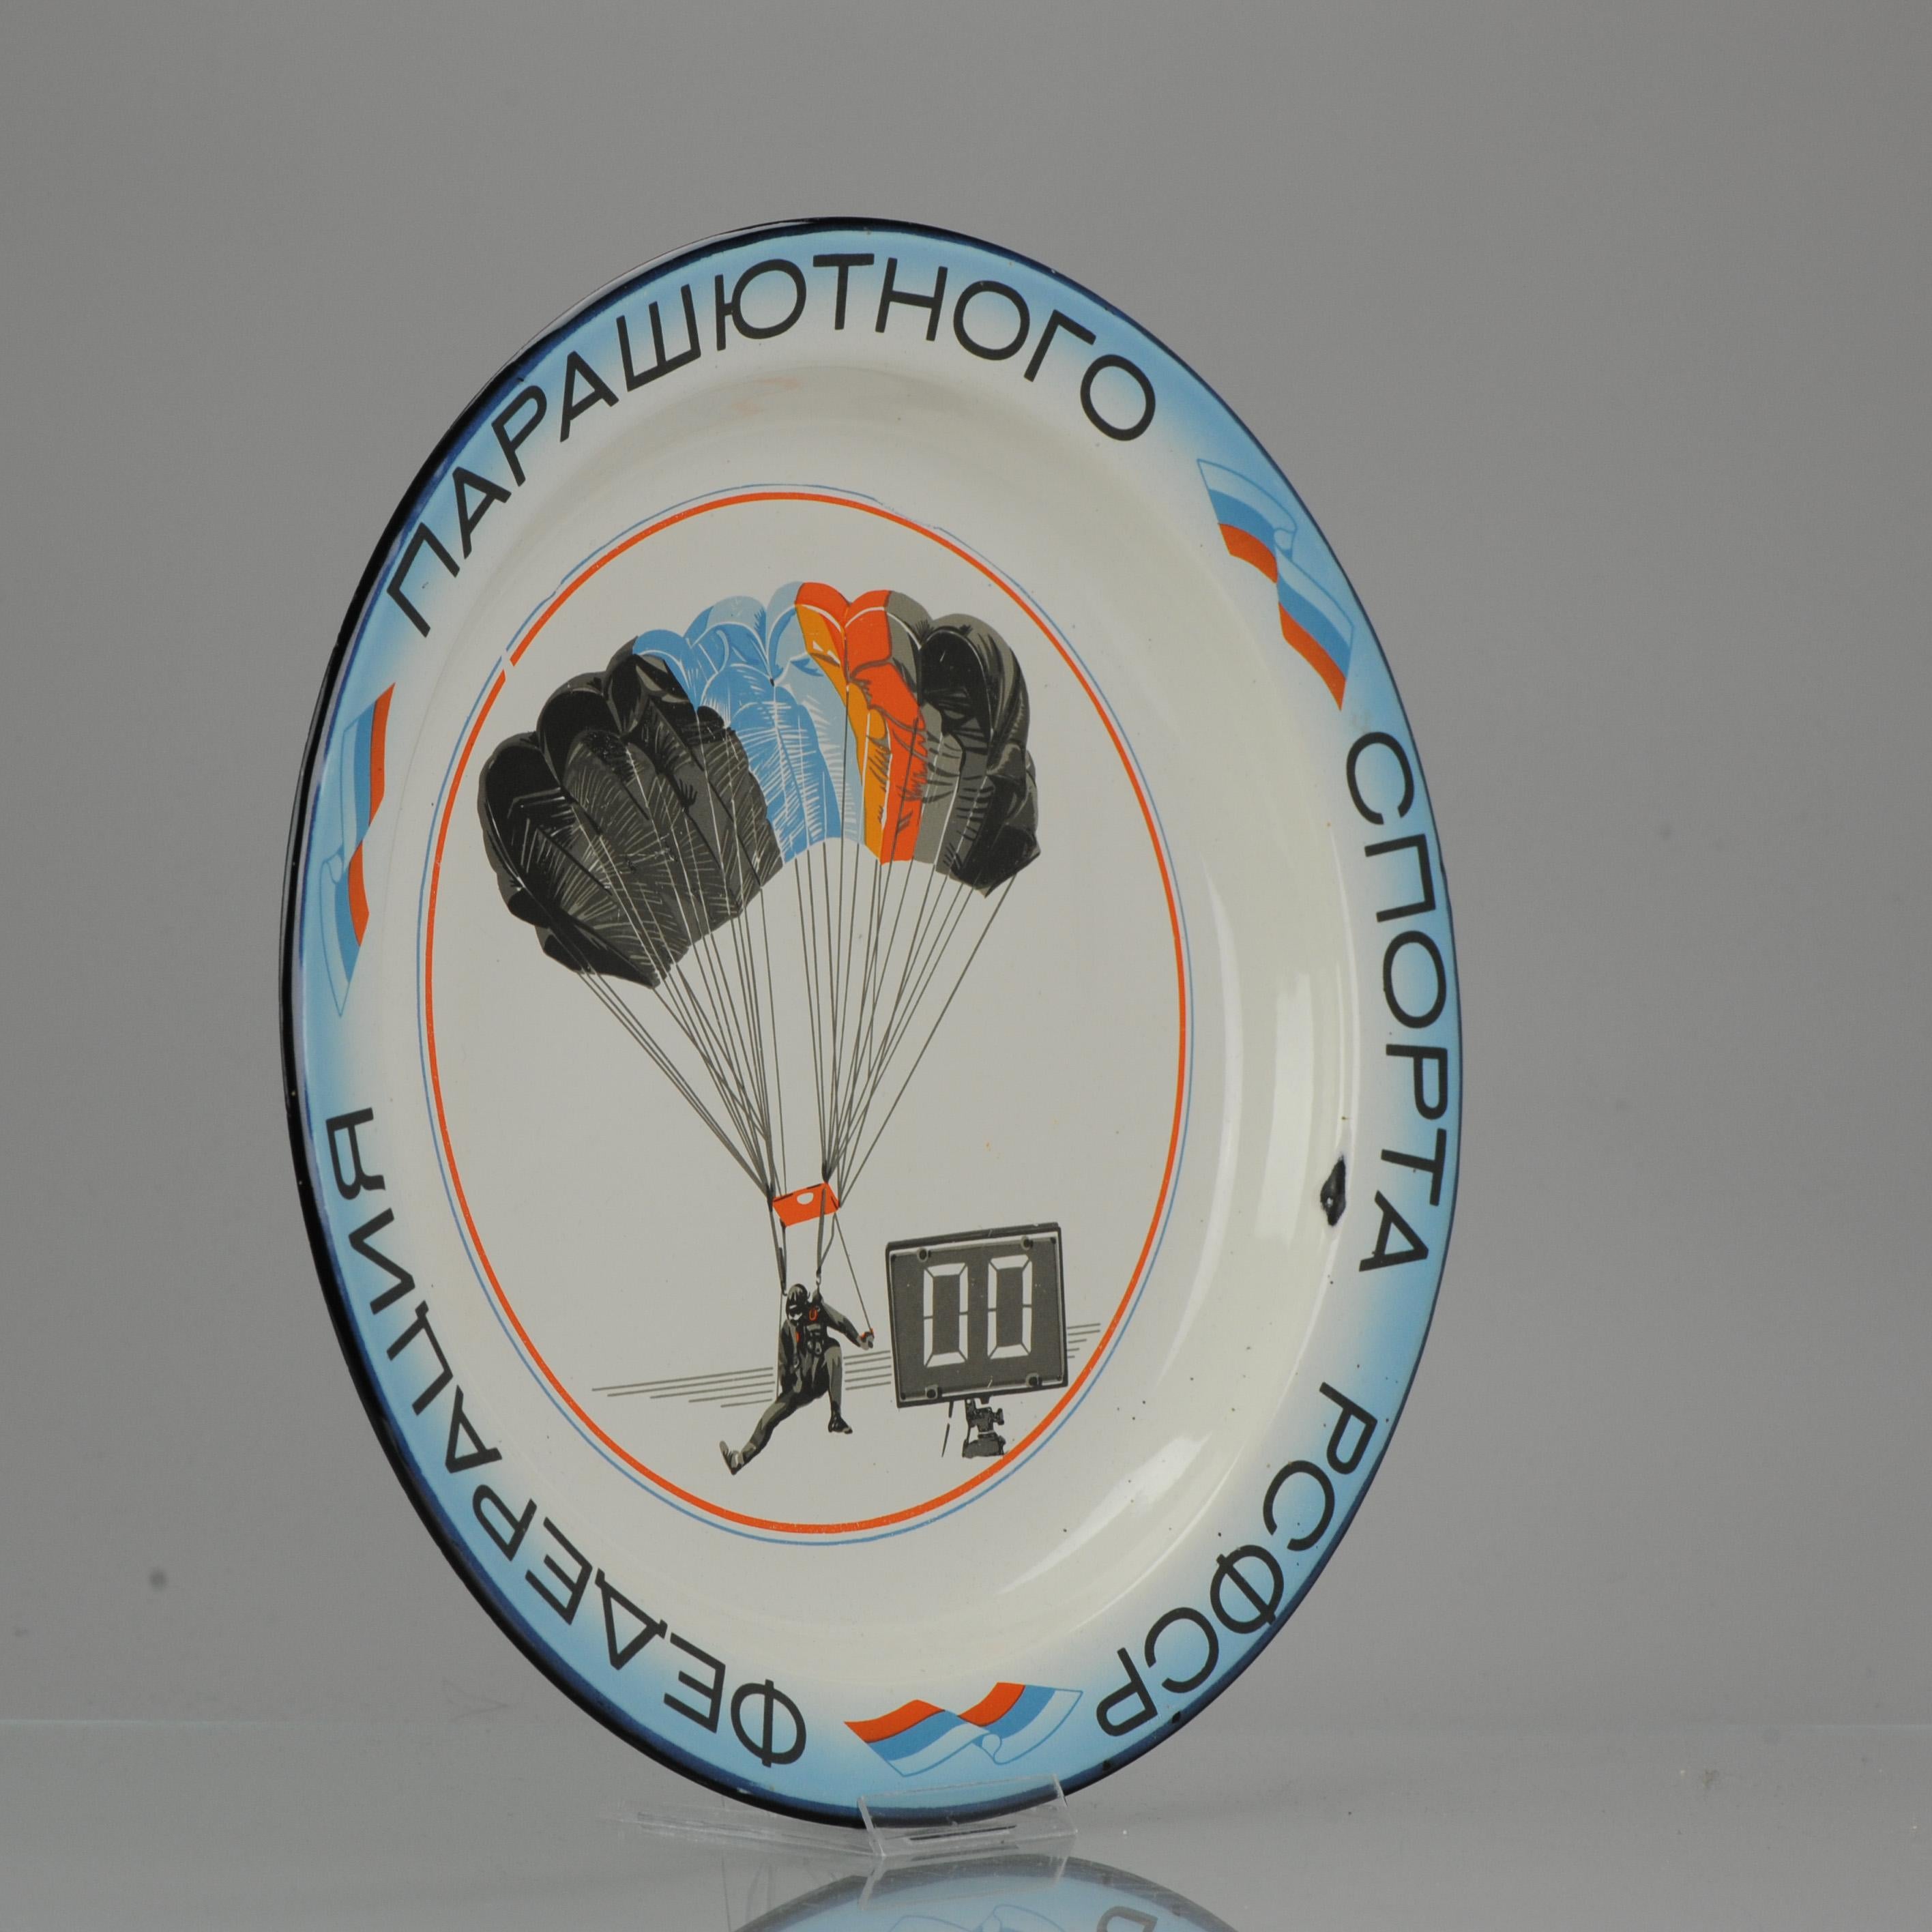 Assiette émaillée Vintage, 1991

Sur le dessus de la plaque se trouve une image d'un parachutiste, ainsi qu'une sorte d'horloge ou de compteur. Le périmètre est orné d'inscriptions russes et de drapeaux russes. Il s'agit d'une plaque commémorative